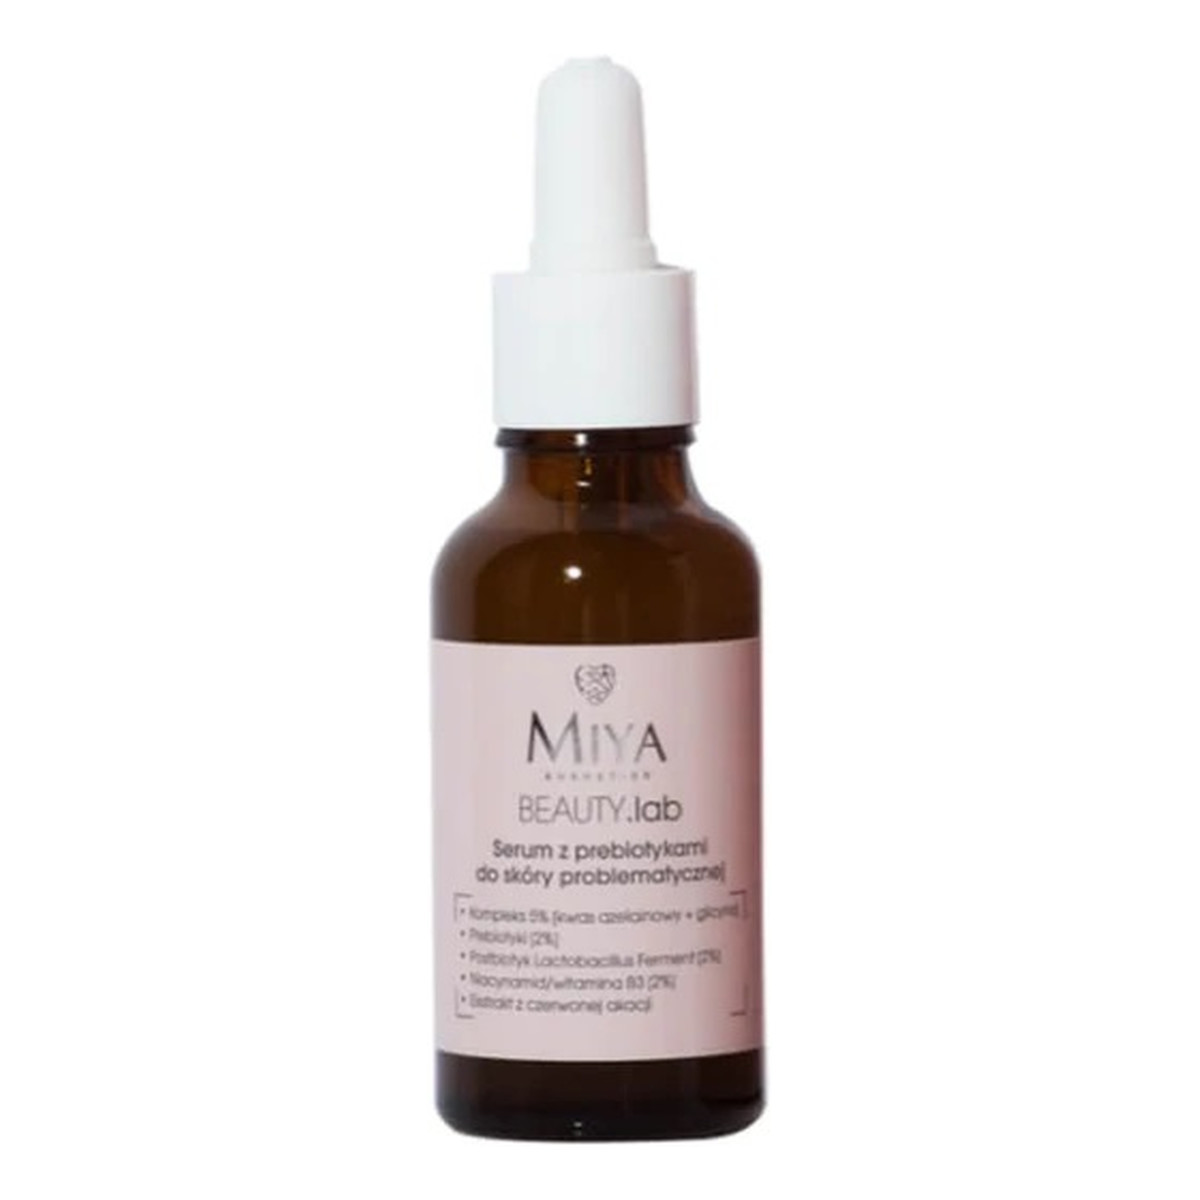 Miya Cosmetics Beauty lab serum z prebiotykami do skóry problematycznej 30ml